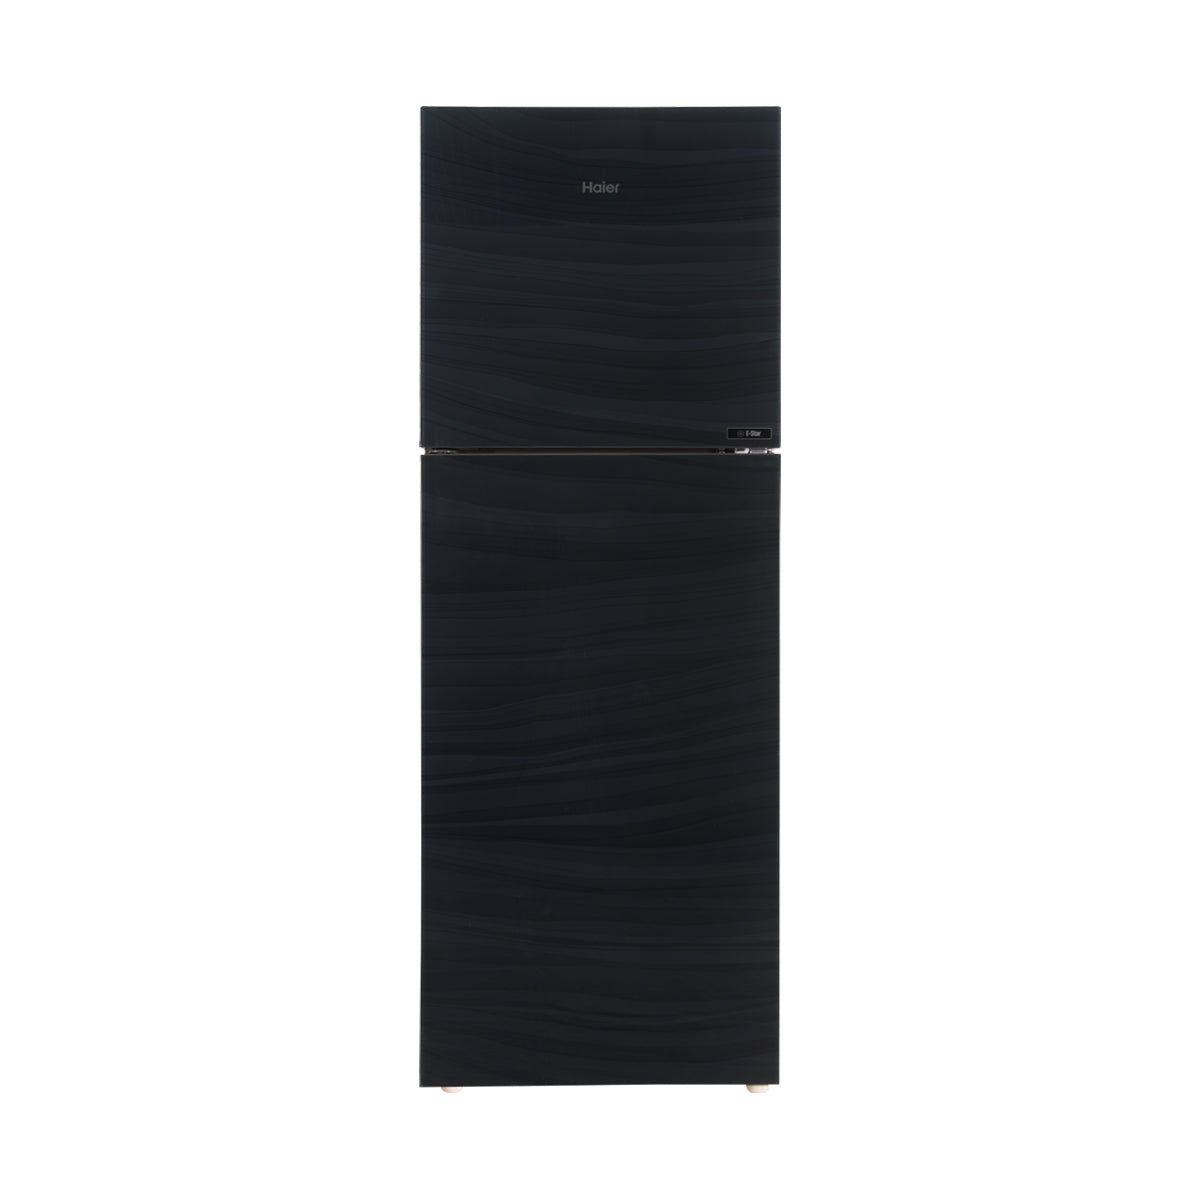 Haier Refrigerator Double Door - HRF-336 EPR/EPB/EPC (Glass Door)